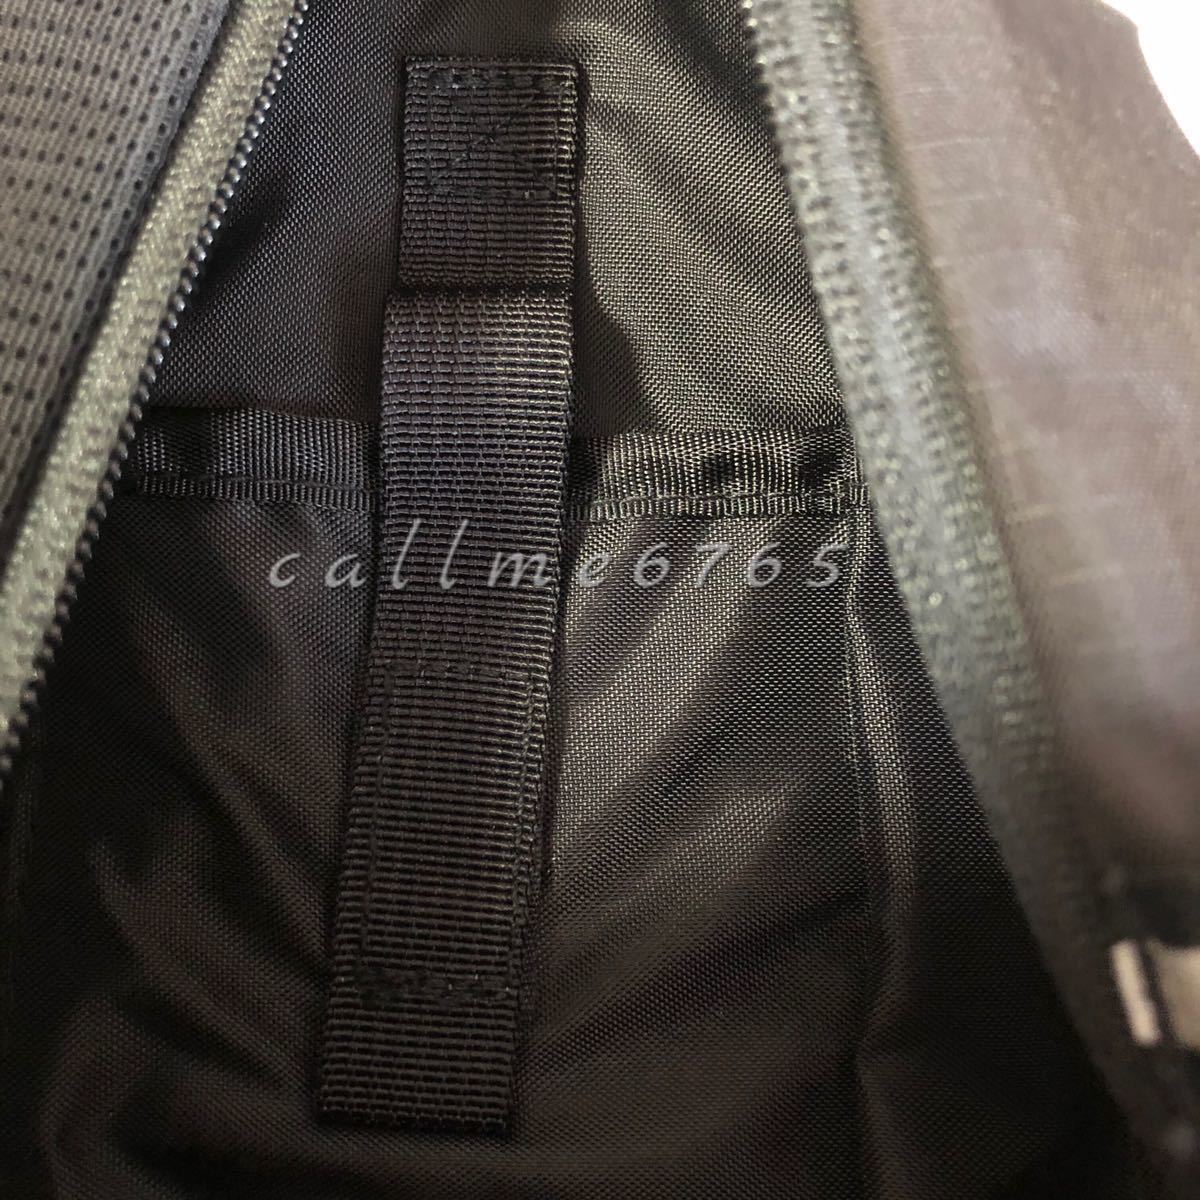 【新品】17ss Supreme backpack シュプリーム 黒 リュック ブラック black バックパック 国内正規品 即納 2017 バッグパック_画像4